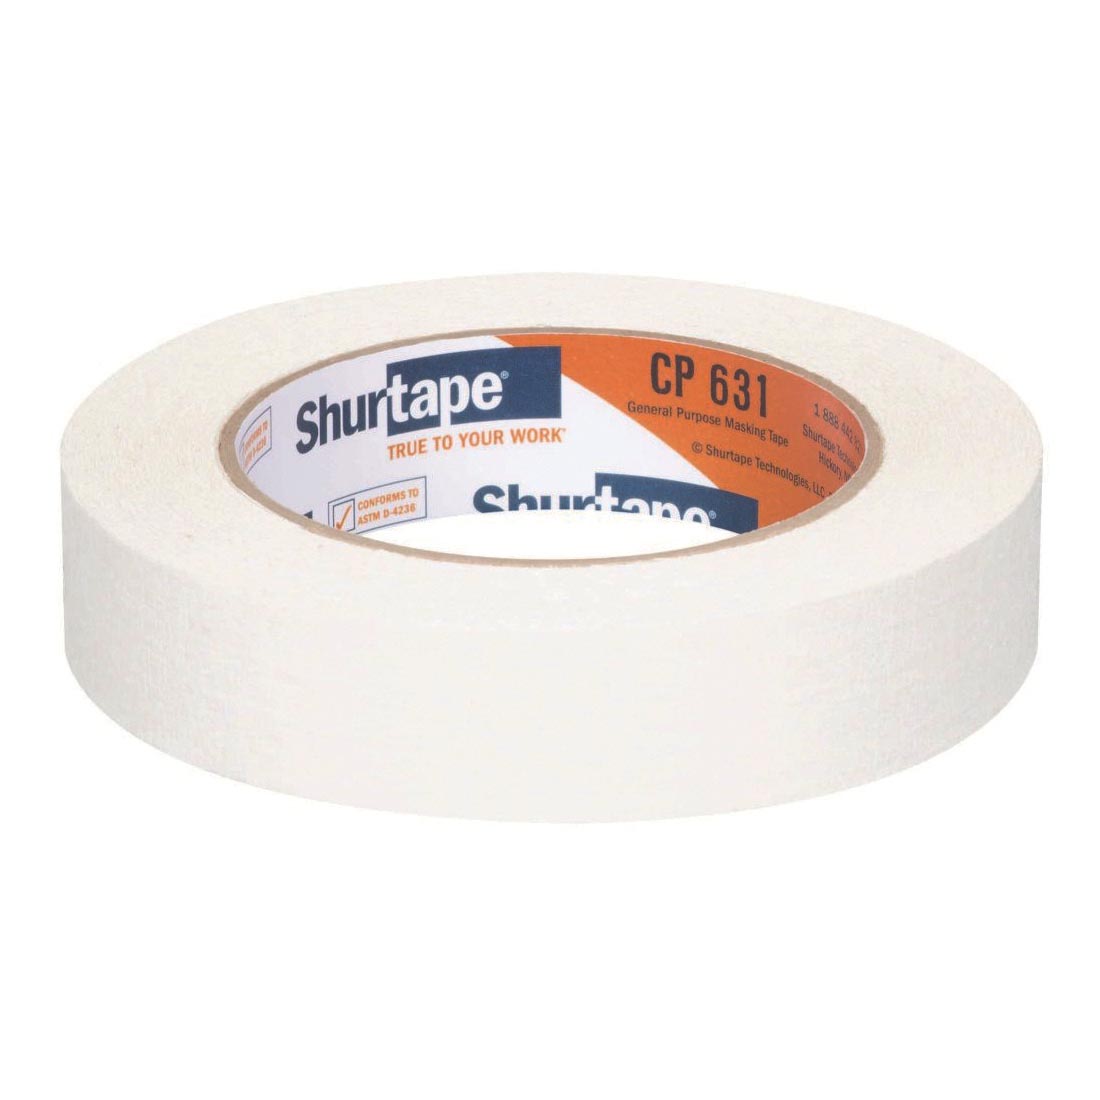 White Shurtape CP 631 General Purpose Masking Tape